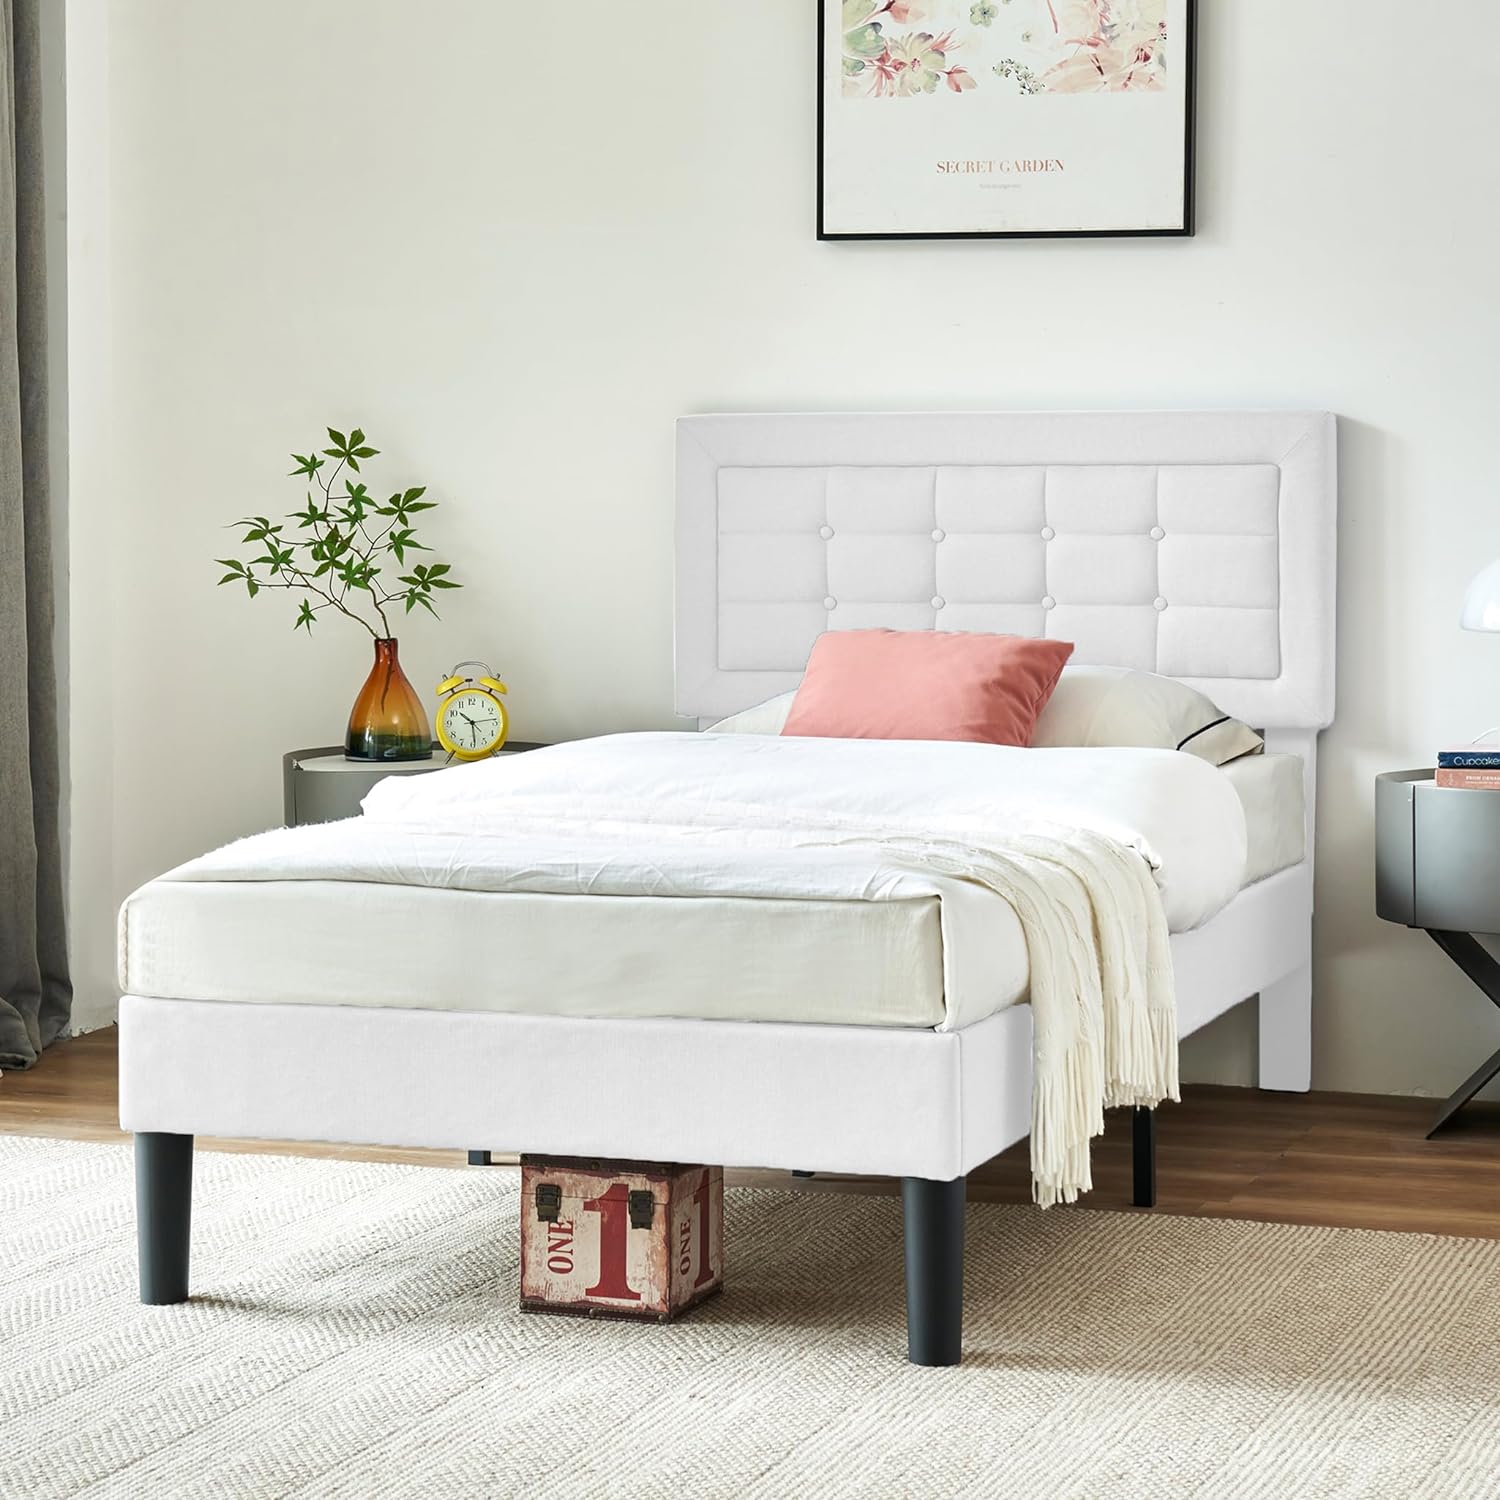 VECELO Upholstered Platform Bed Frame with Height Adjustable Headboard